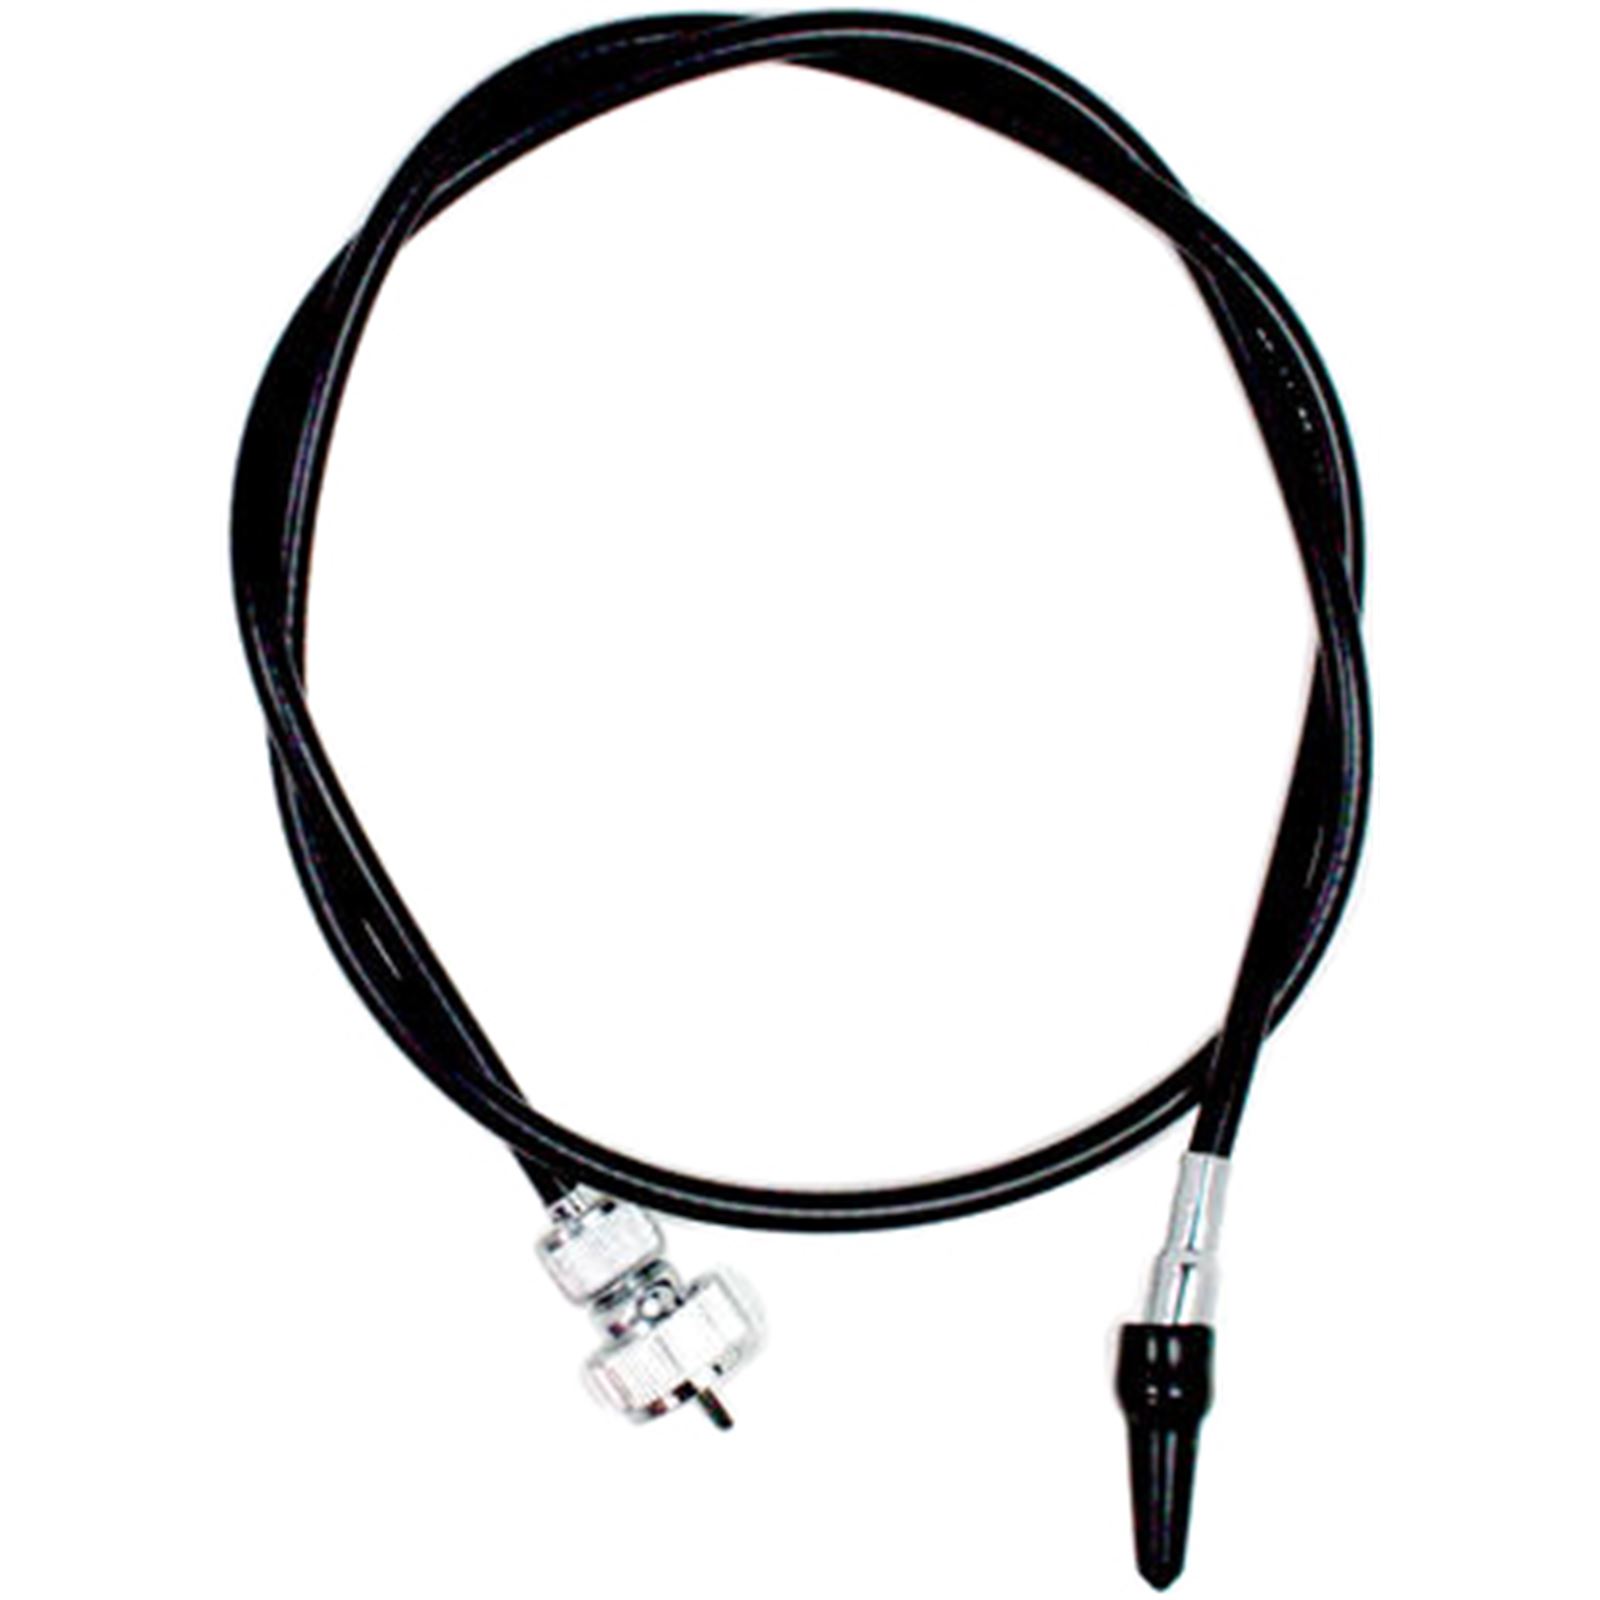 Motion Pro Black Vinyl Speedo Cable